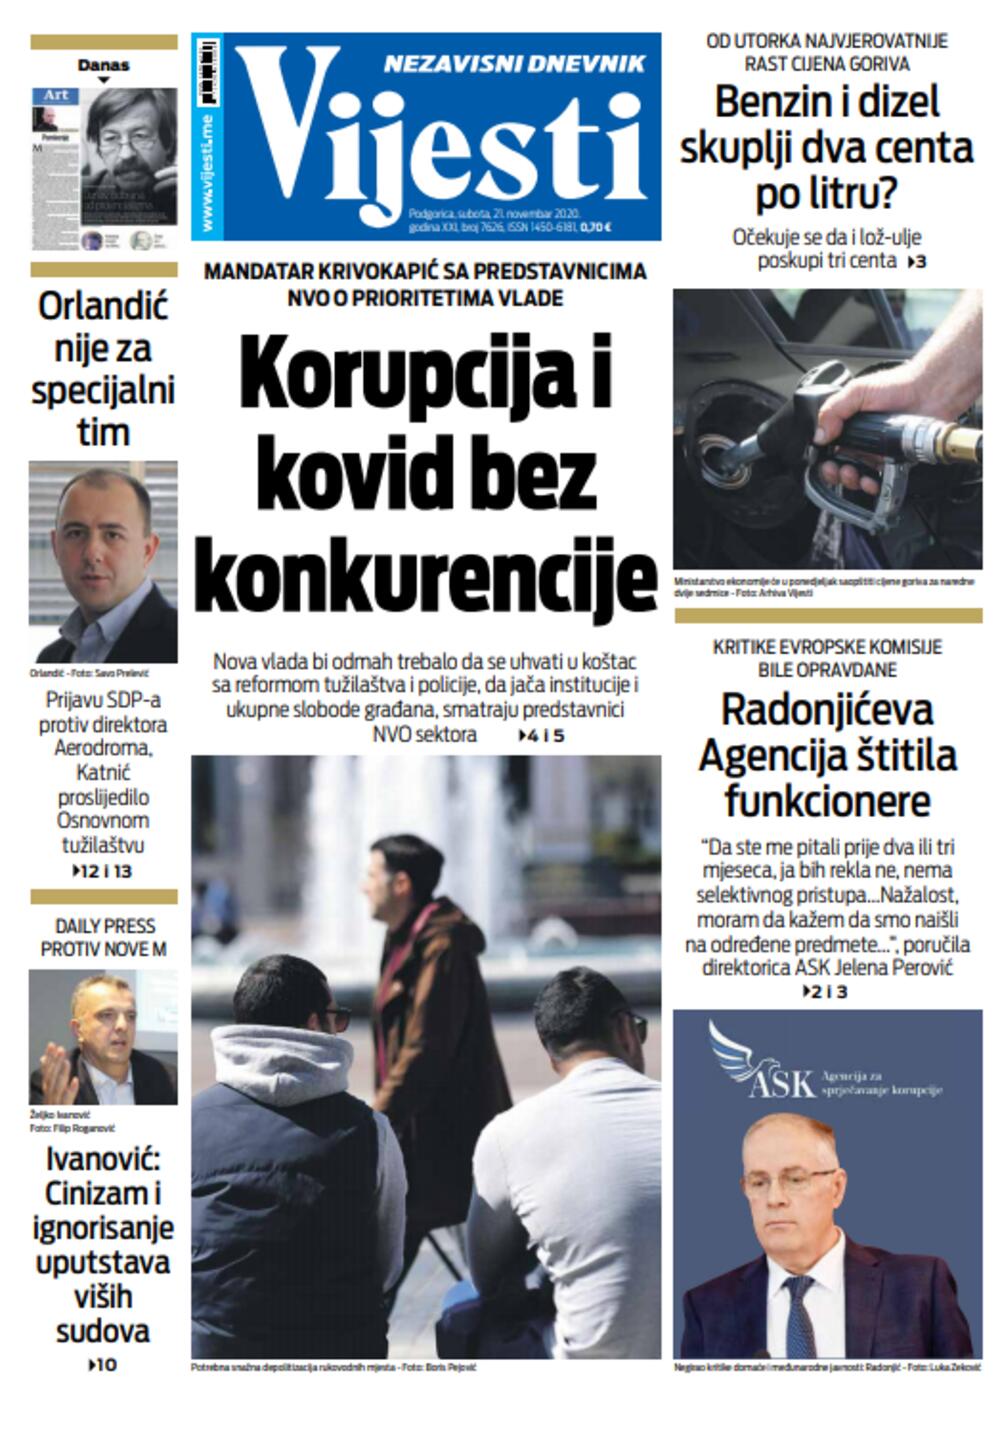 Naslovna strana "Vijesti" za 21. novembar, Foto: Vijesti